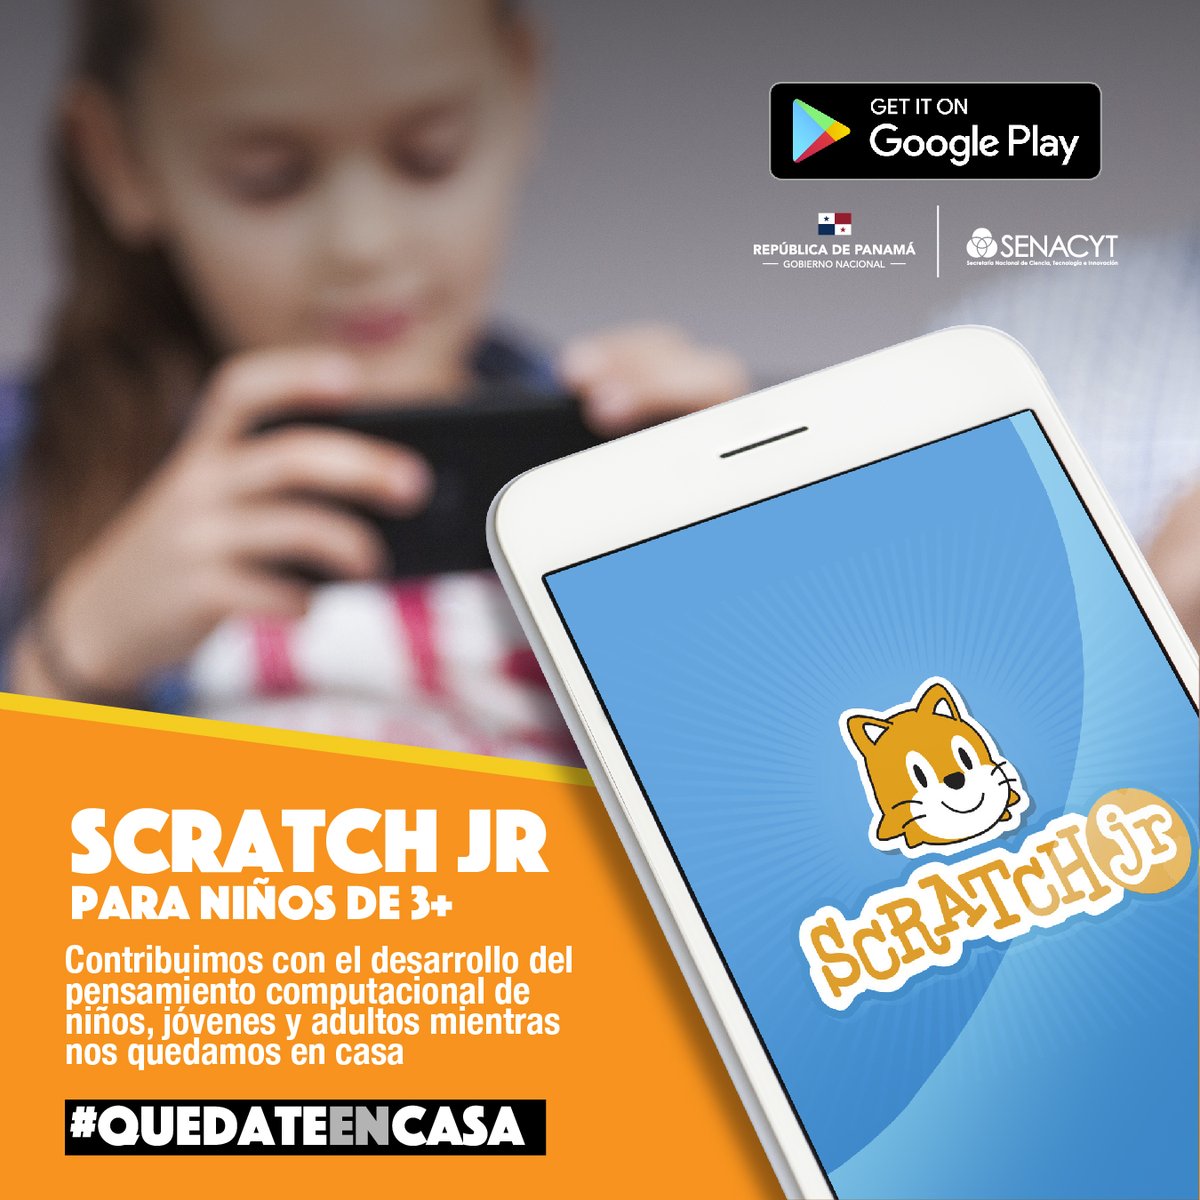 #QuédateEnCasa Los invitamos a descargar #ScratchJr en google play para niños de 3 años en adelante y así contribuir en el desarrollo del pensamiento computacional mientras nos quedamos en casa.
#ProtégetePanamá #UnidosLoHacemos
#HoraDelCódigo  #Yopuedoprogramar #Panamá